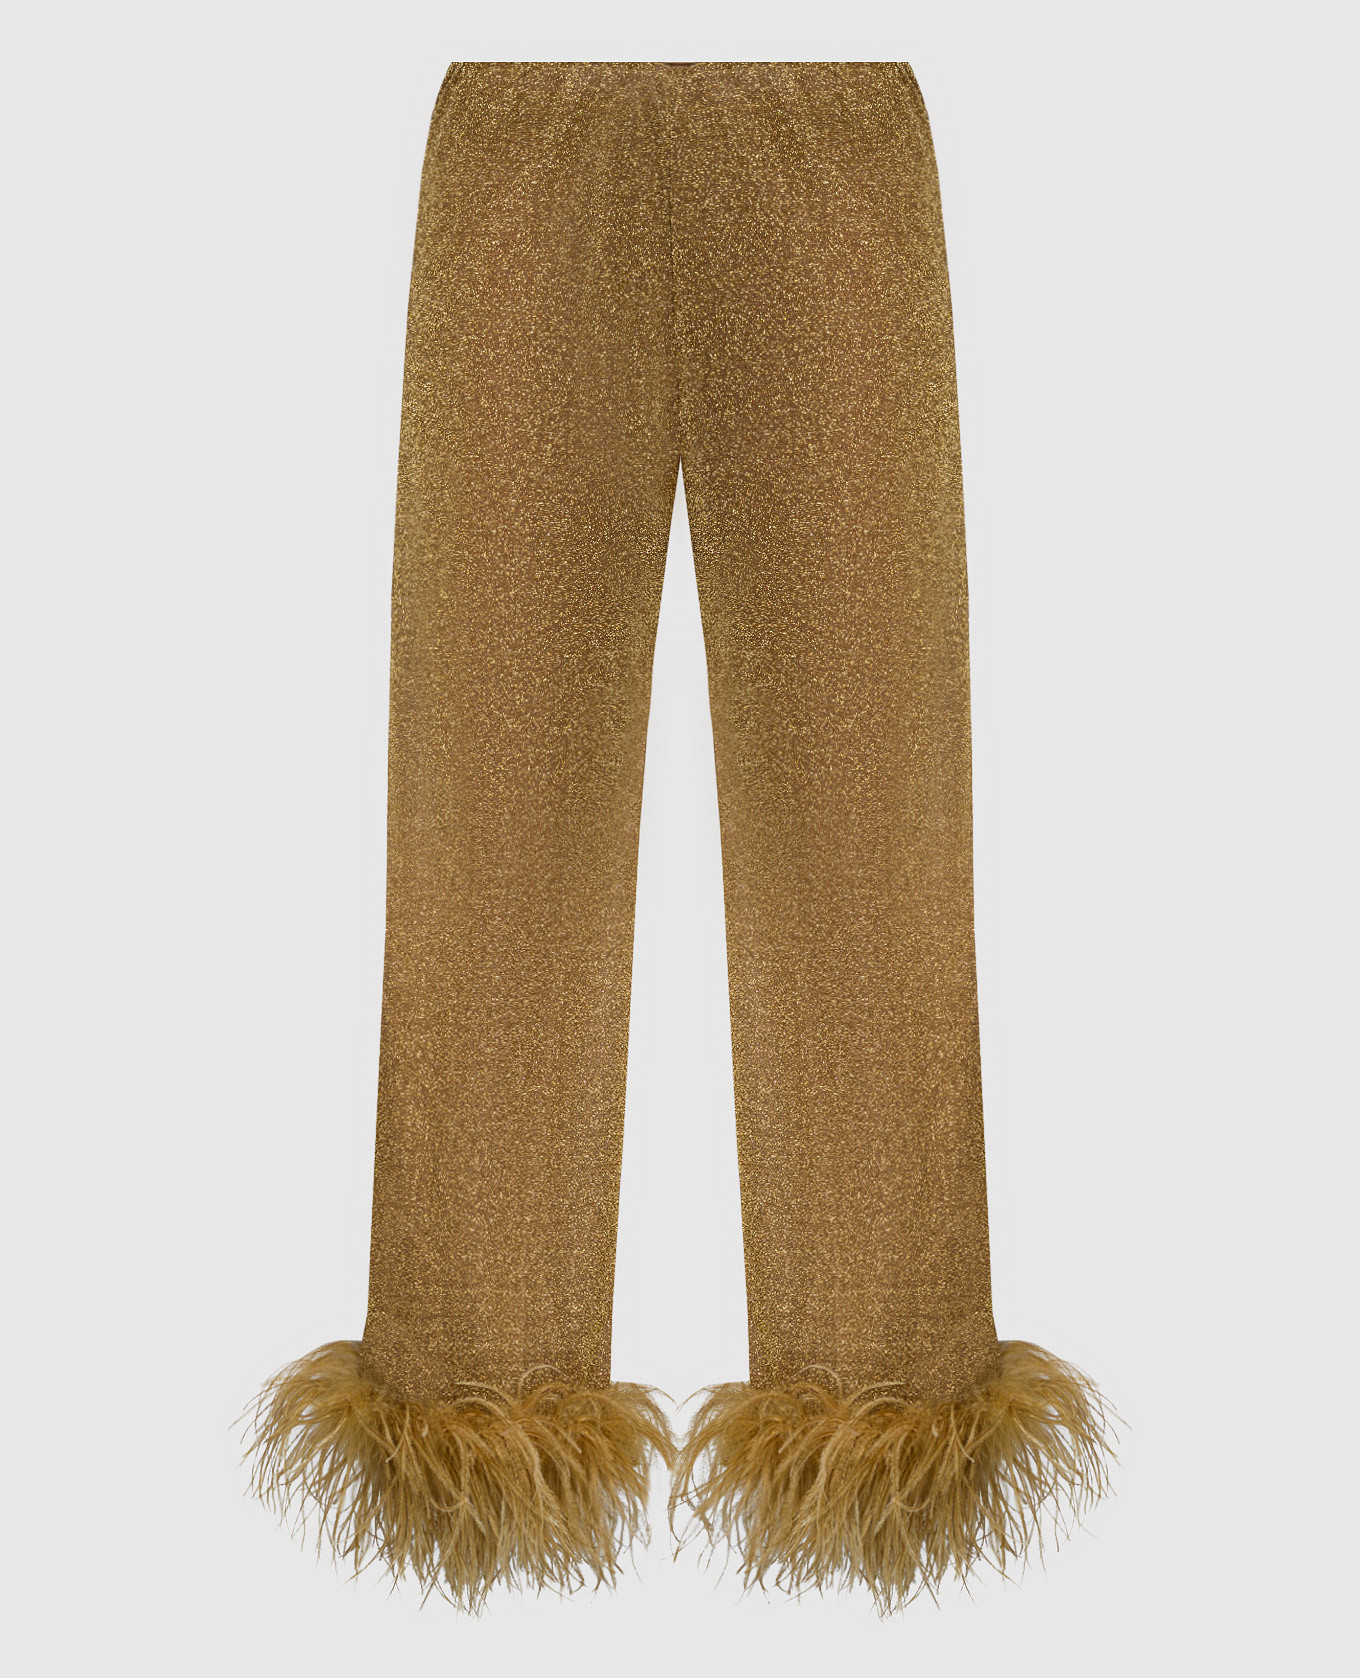 Золотые брюки Lumiеre Plumage со страусиными перьями.